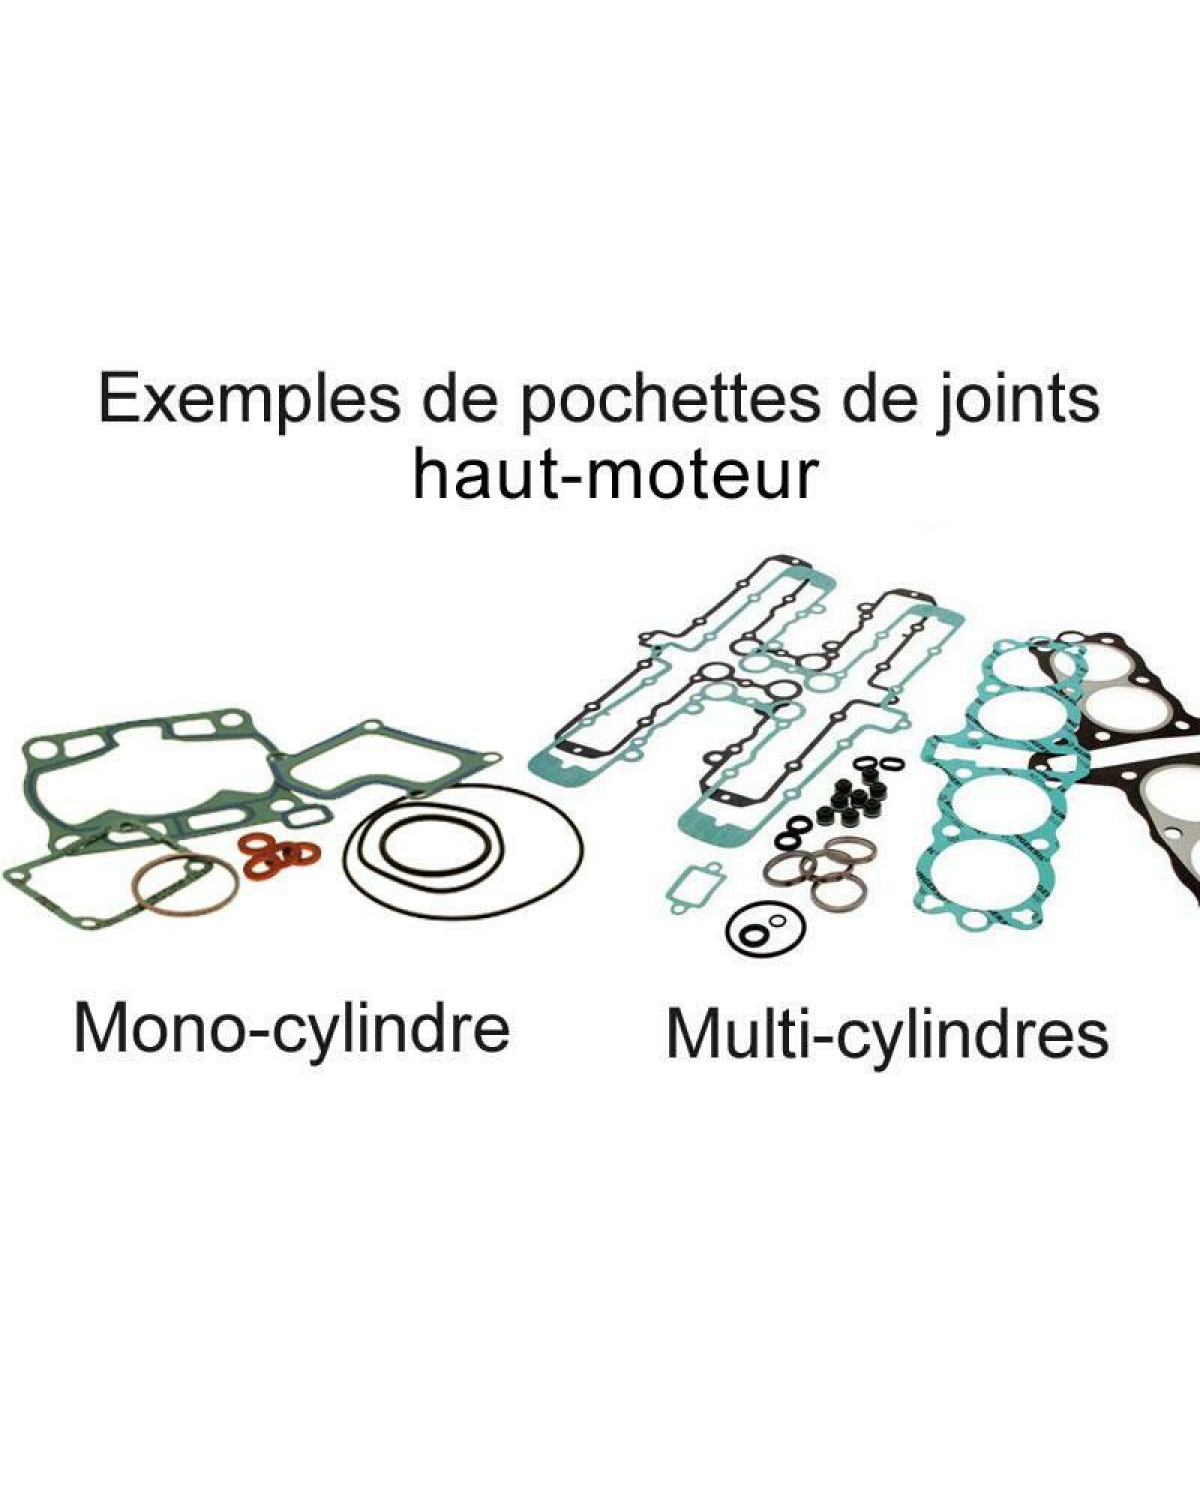 https://www.cardy.fr/images/large/centauro-kit-joints-haut-moteur-pour-am6-europa-red-rose-et-moteur-minarelli-1991-00_9049155.jpg